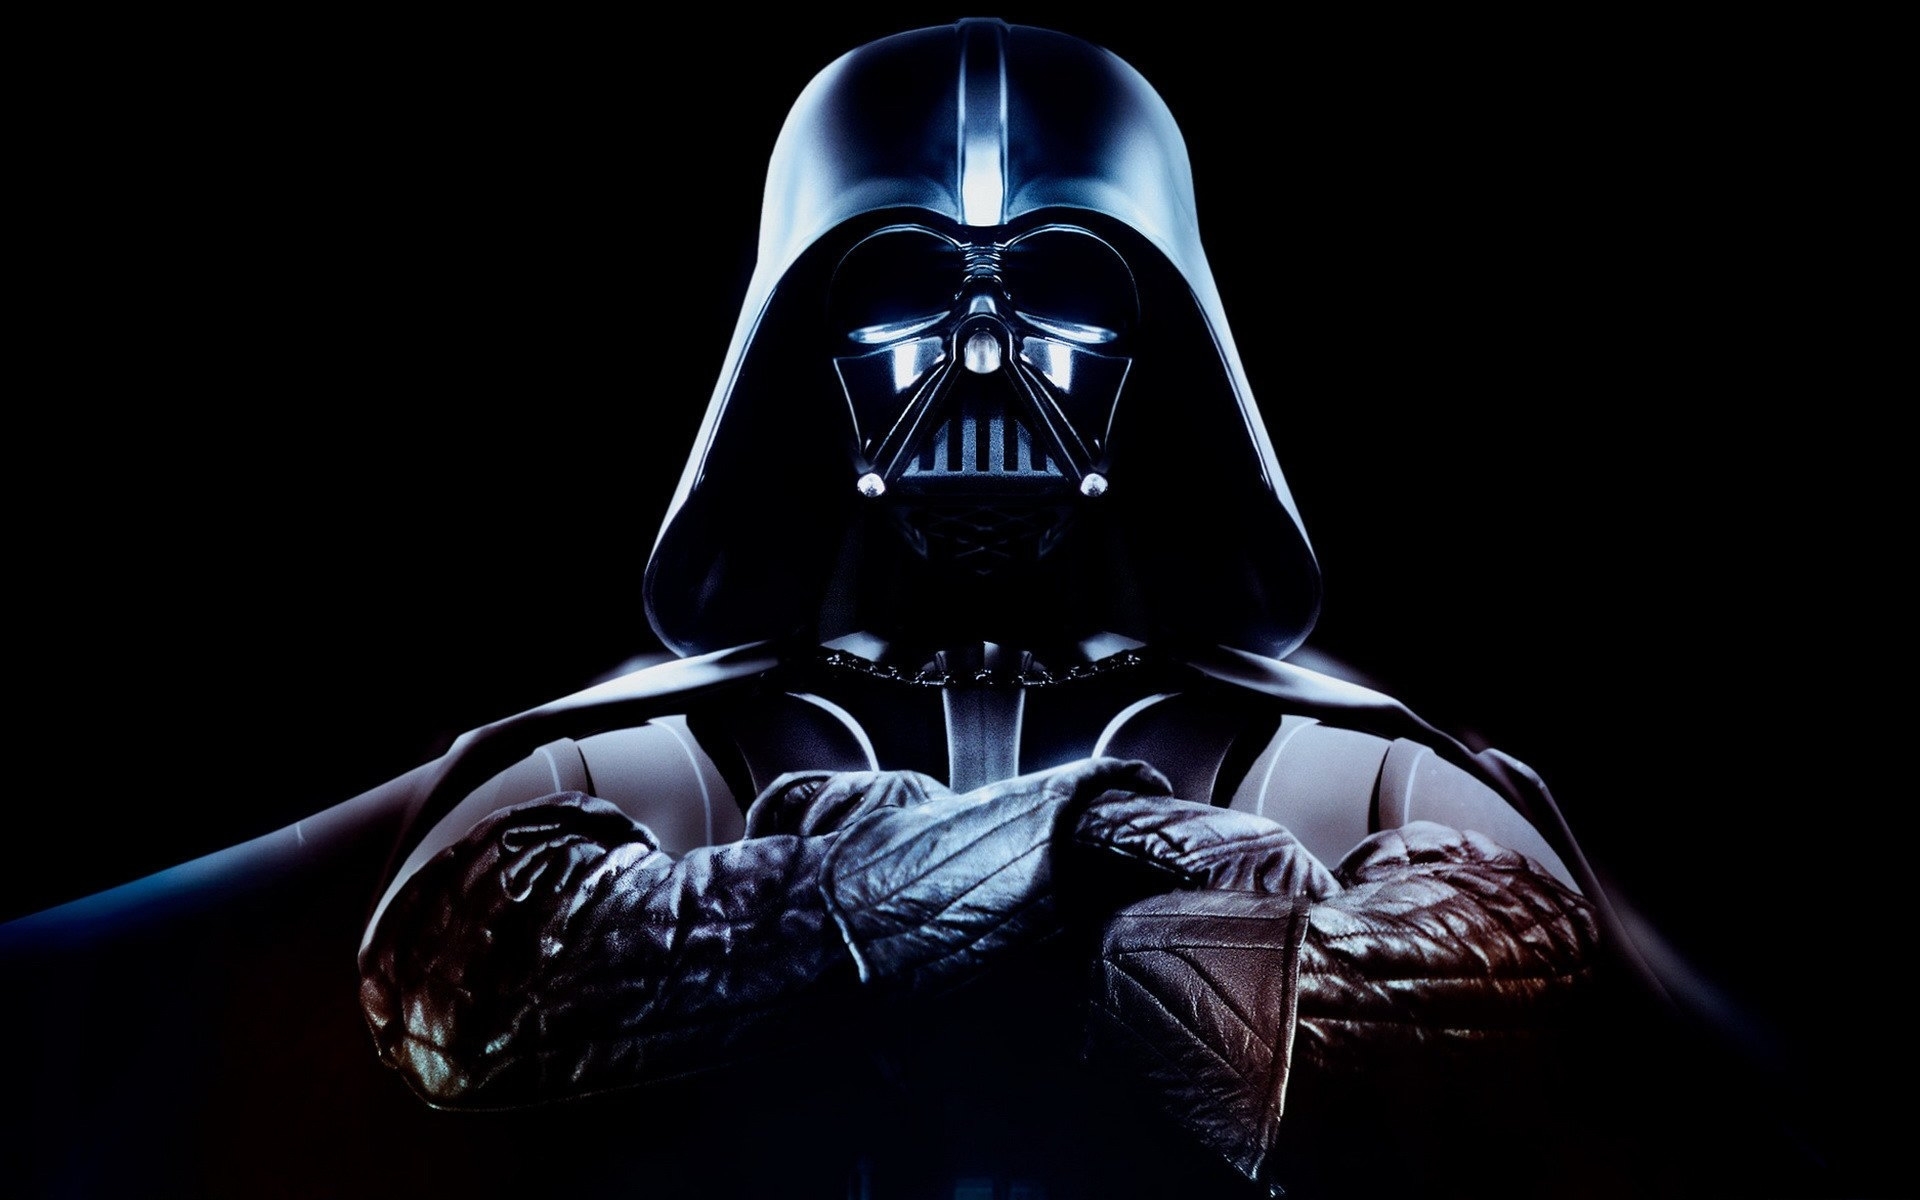 Descarga gratuita de fondo de pantalla para móvil de Dart Vader, Star Wars, Cine.